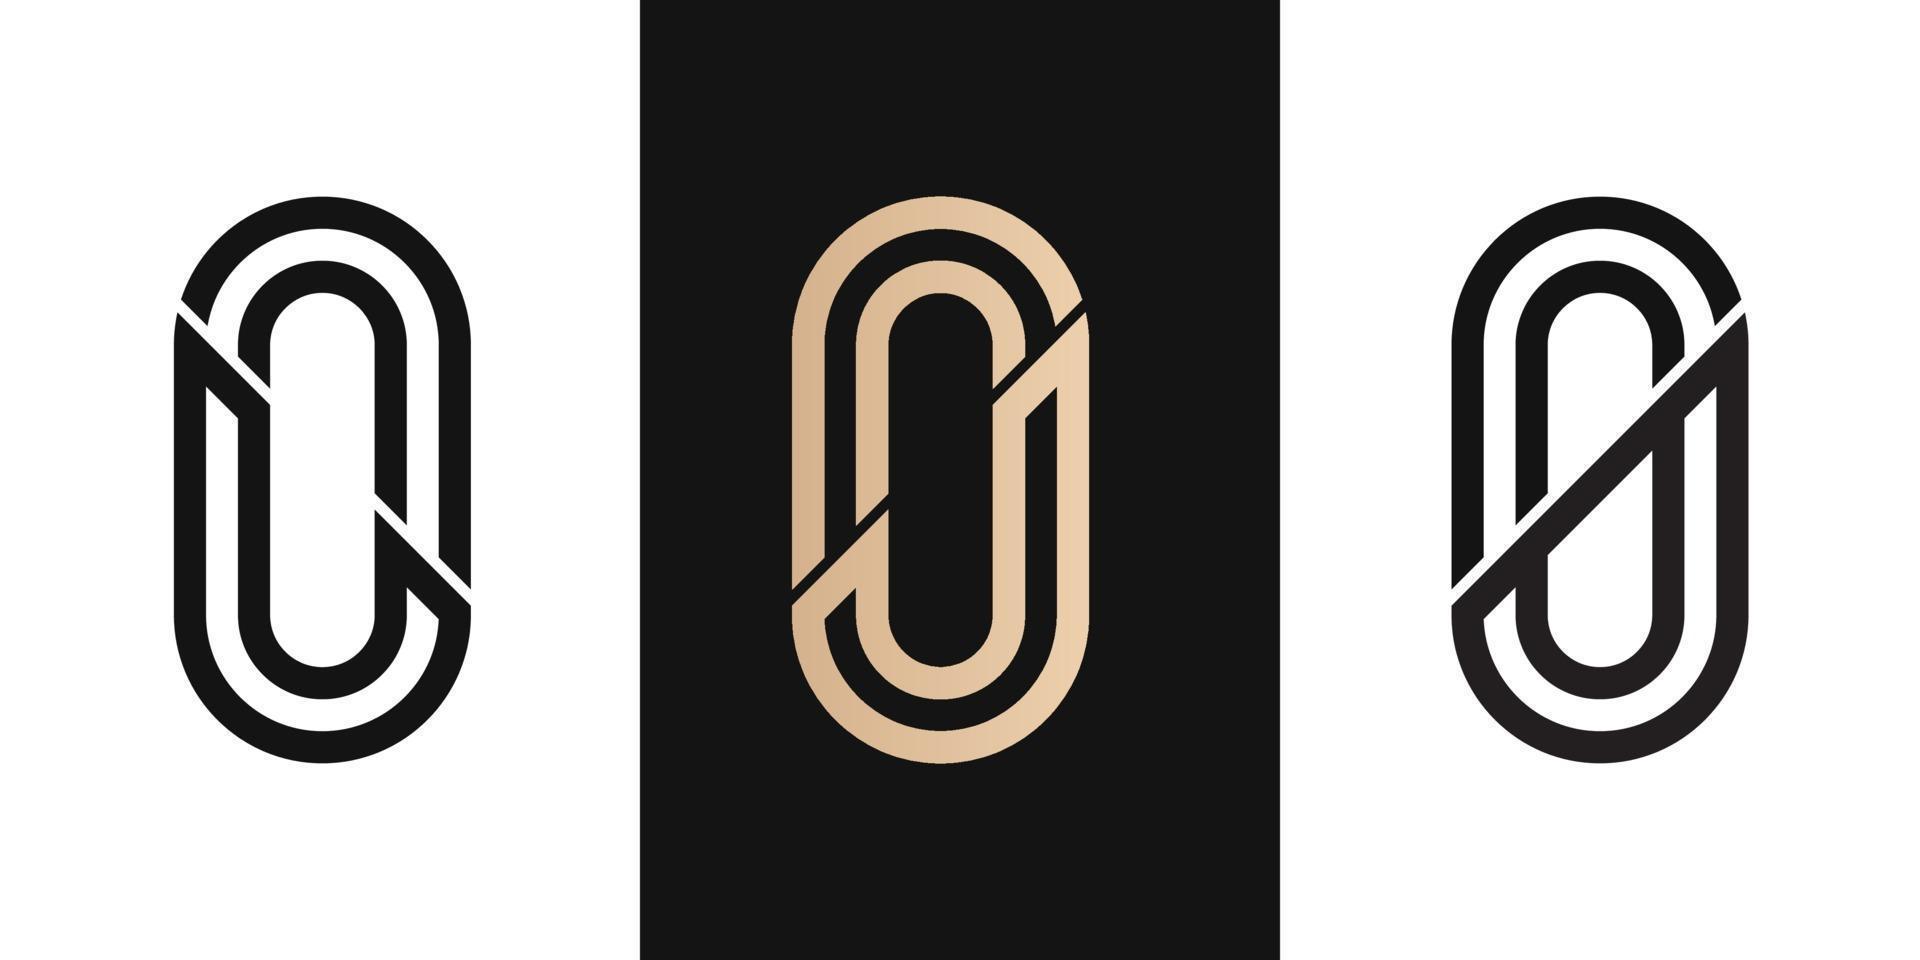 Buchstabe initial lo, ol, jo, oj, 0 Logo-Design-Symbol für Unternehmen oder Unternehmen mit ovaler Form Linie Buchstabe initial ss Logo-Design-Symbol für Unternehmen mit ovaler Form Linie. kreative Idee Vektor Vorlage.